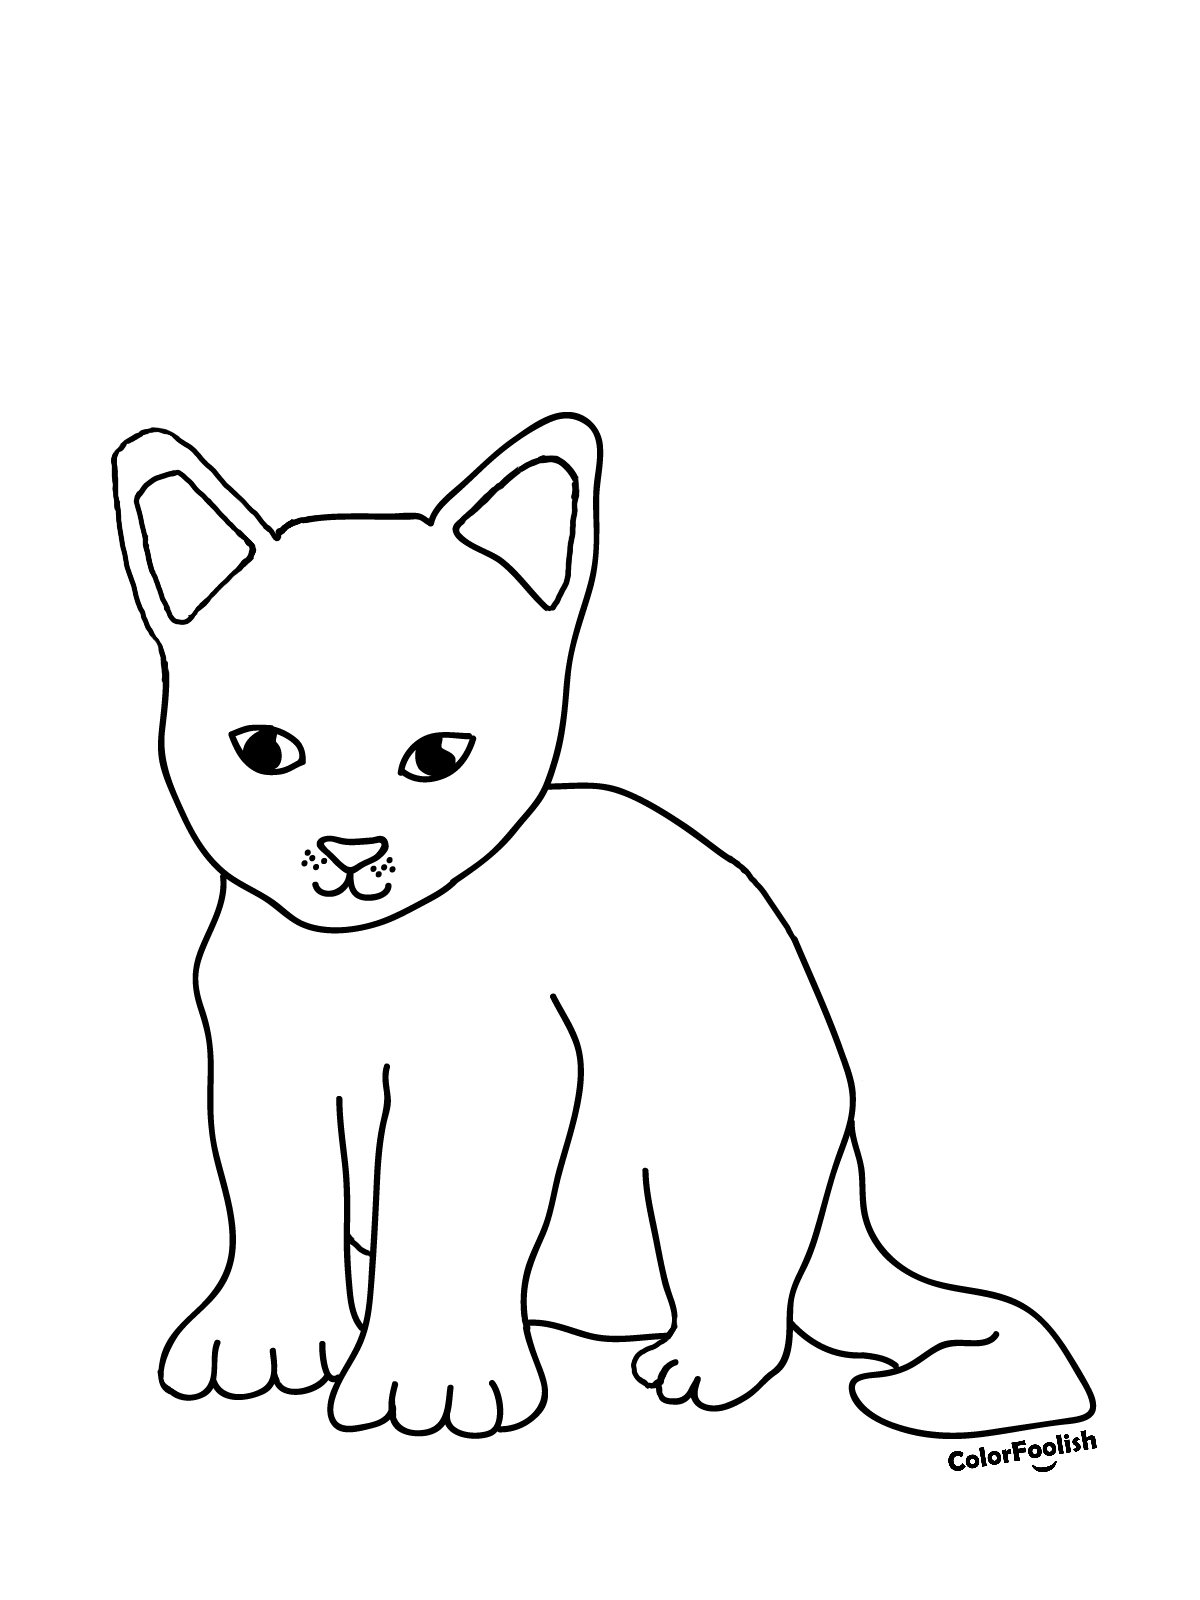 एक गोड मांजरीचे पिल्लू रंग पृष्ठ